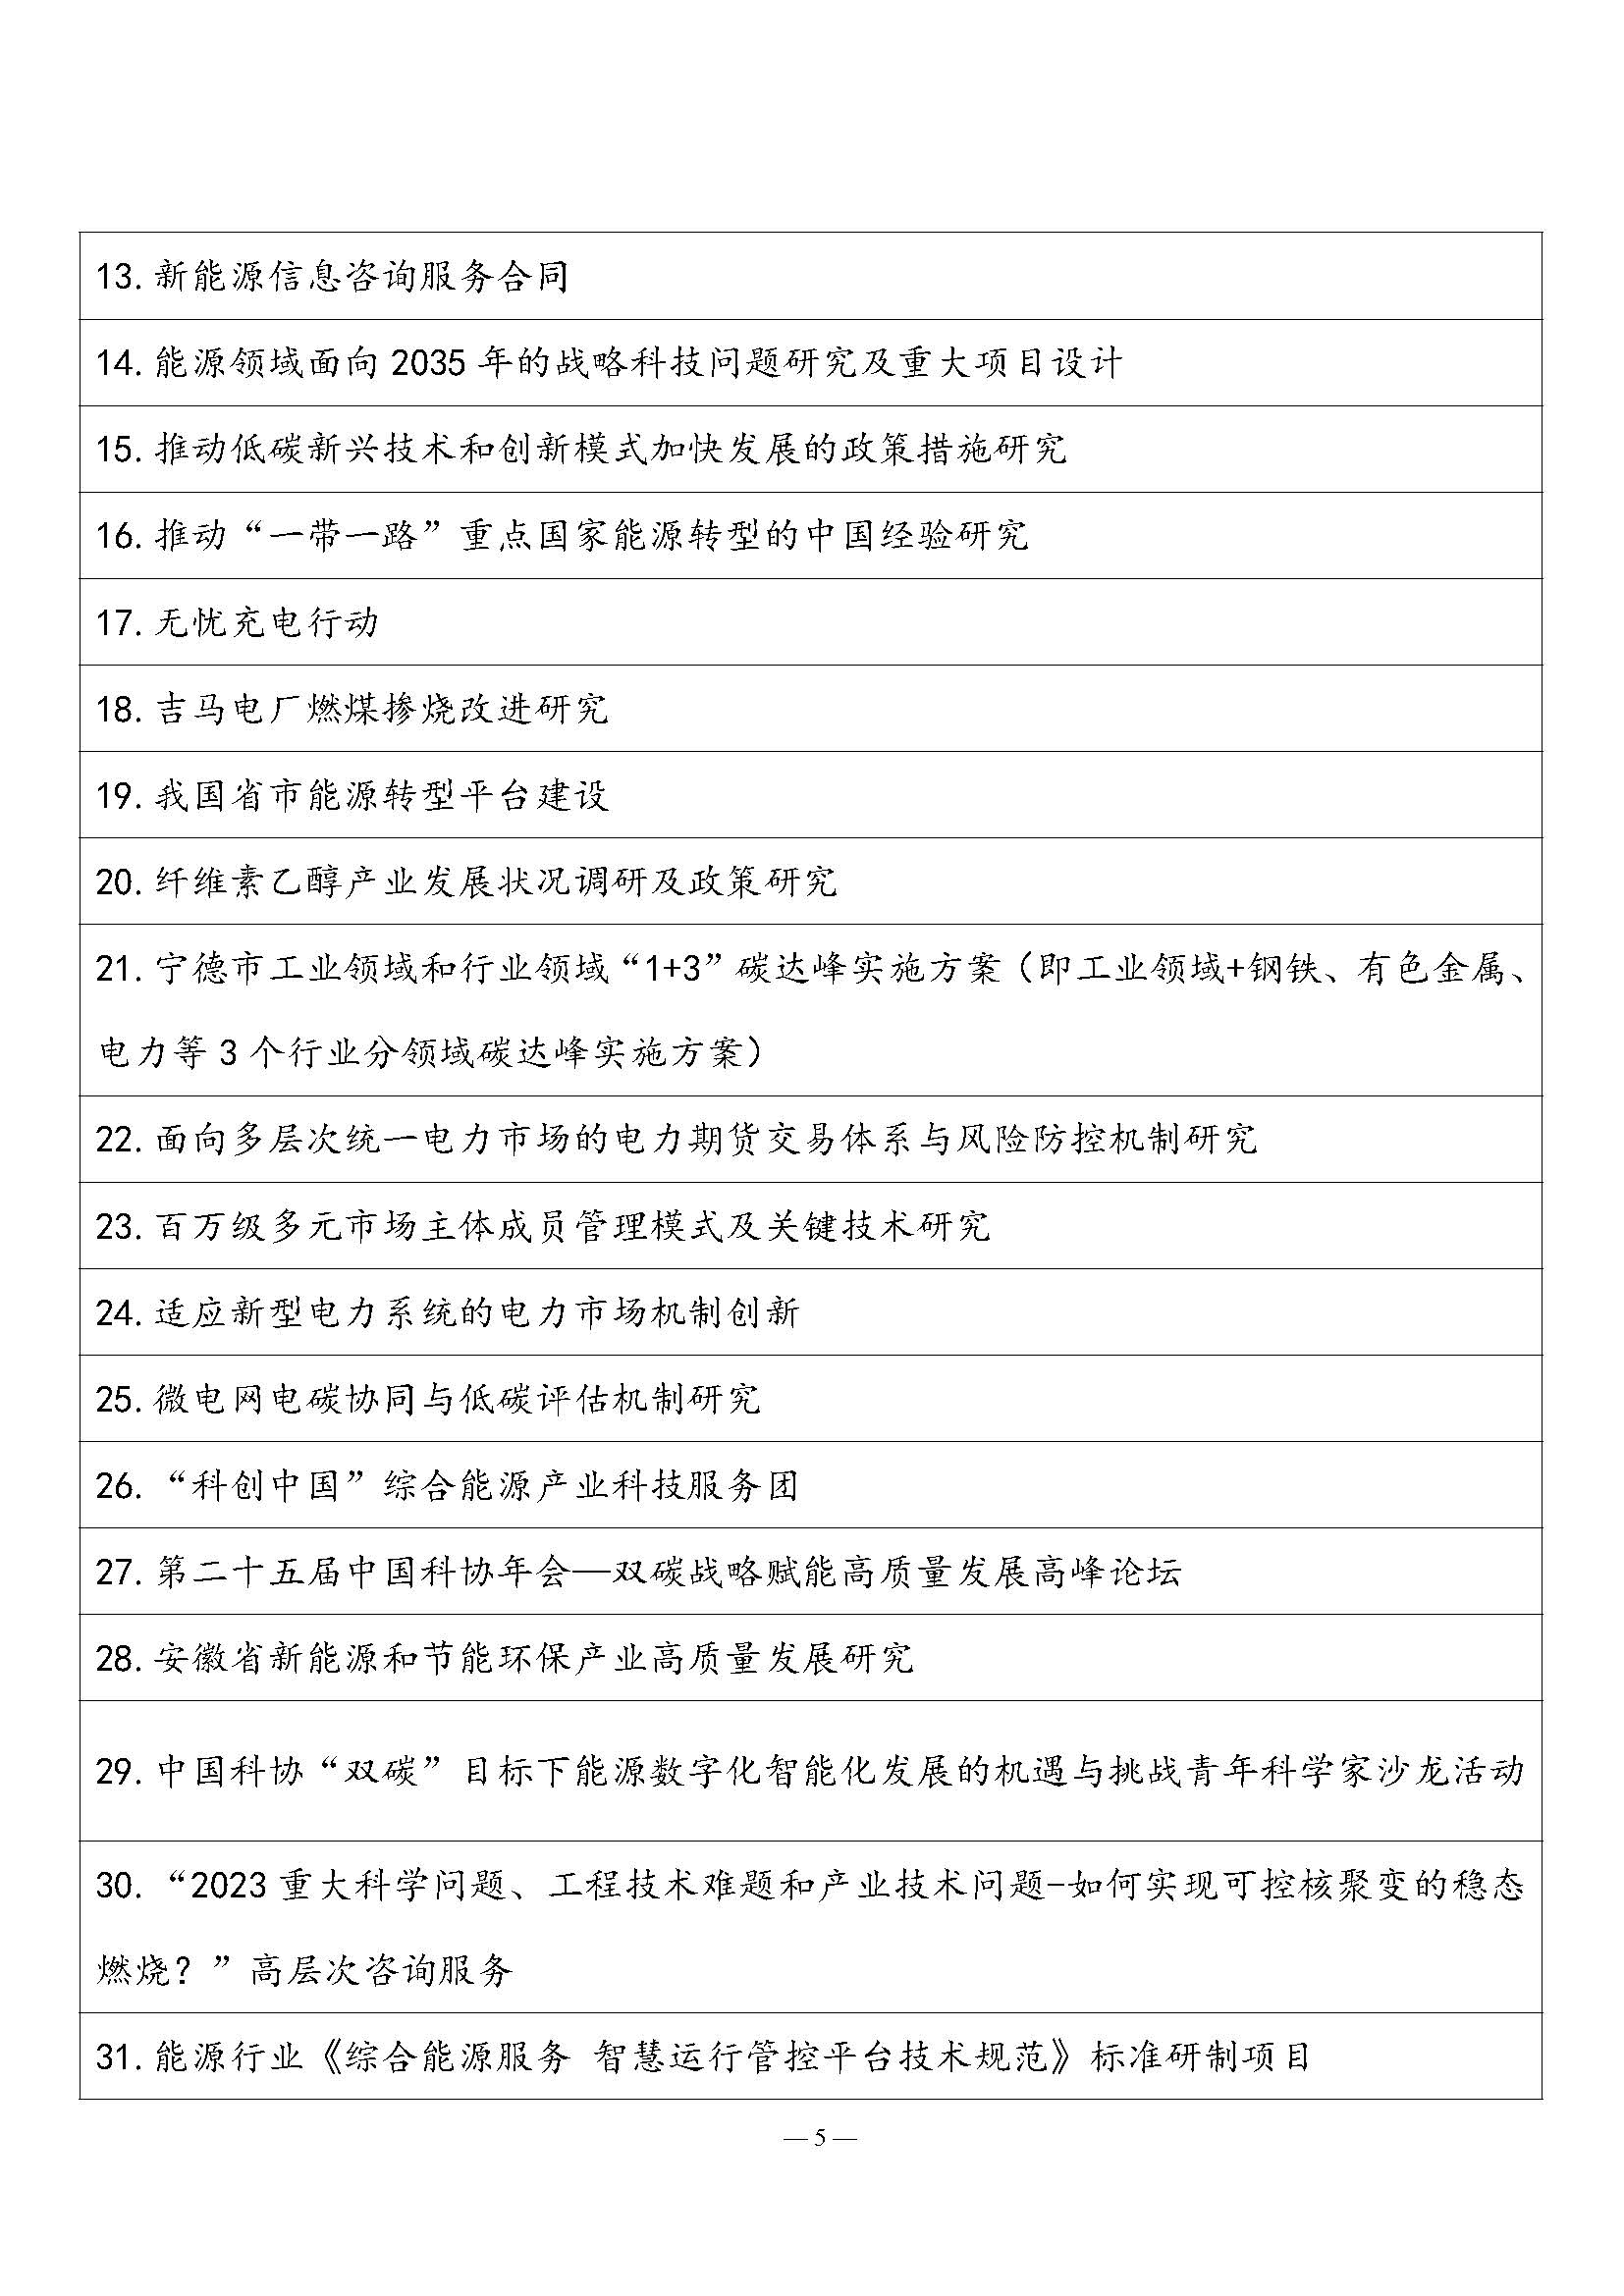 中国能源研究会2023年学术活动和项目汇总(3)_页面_5.jpg